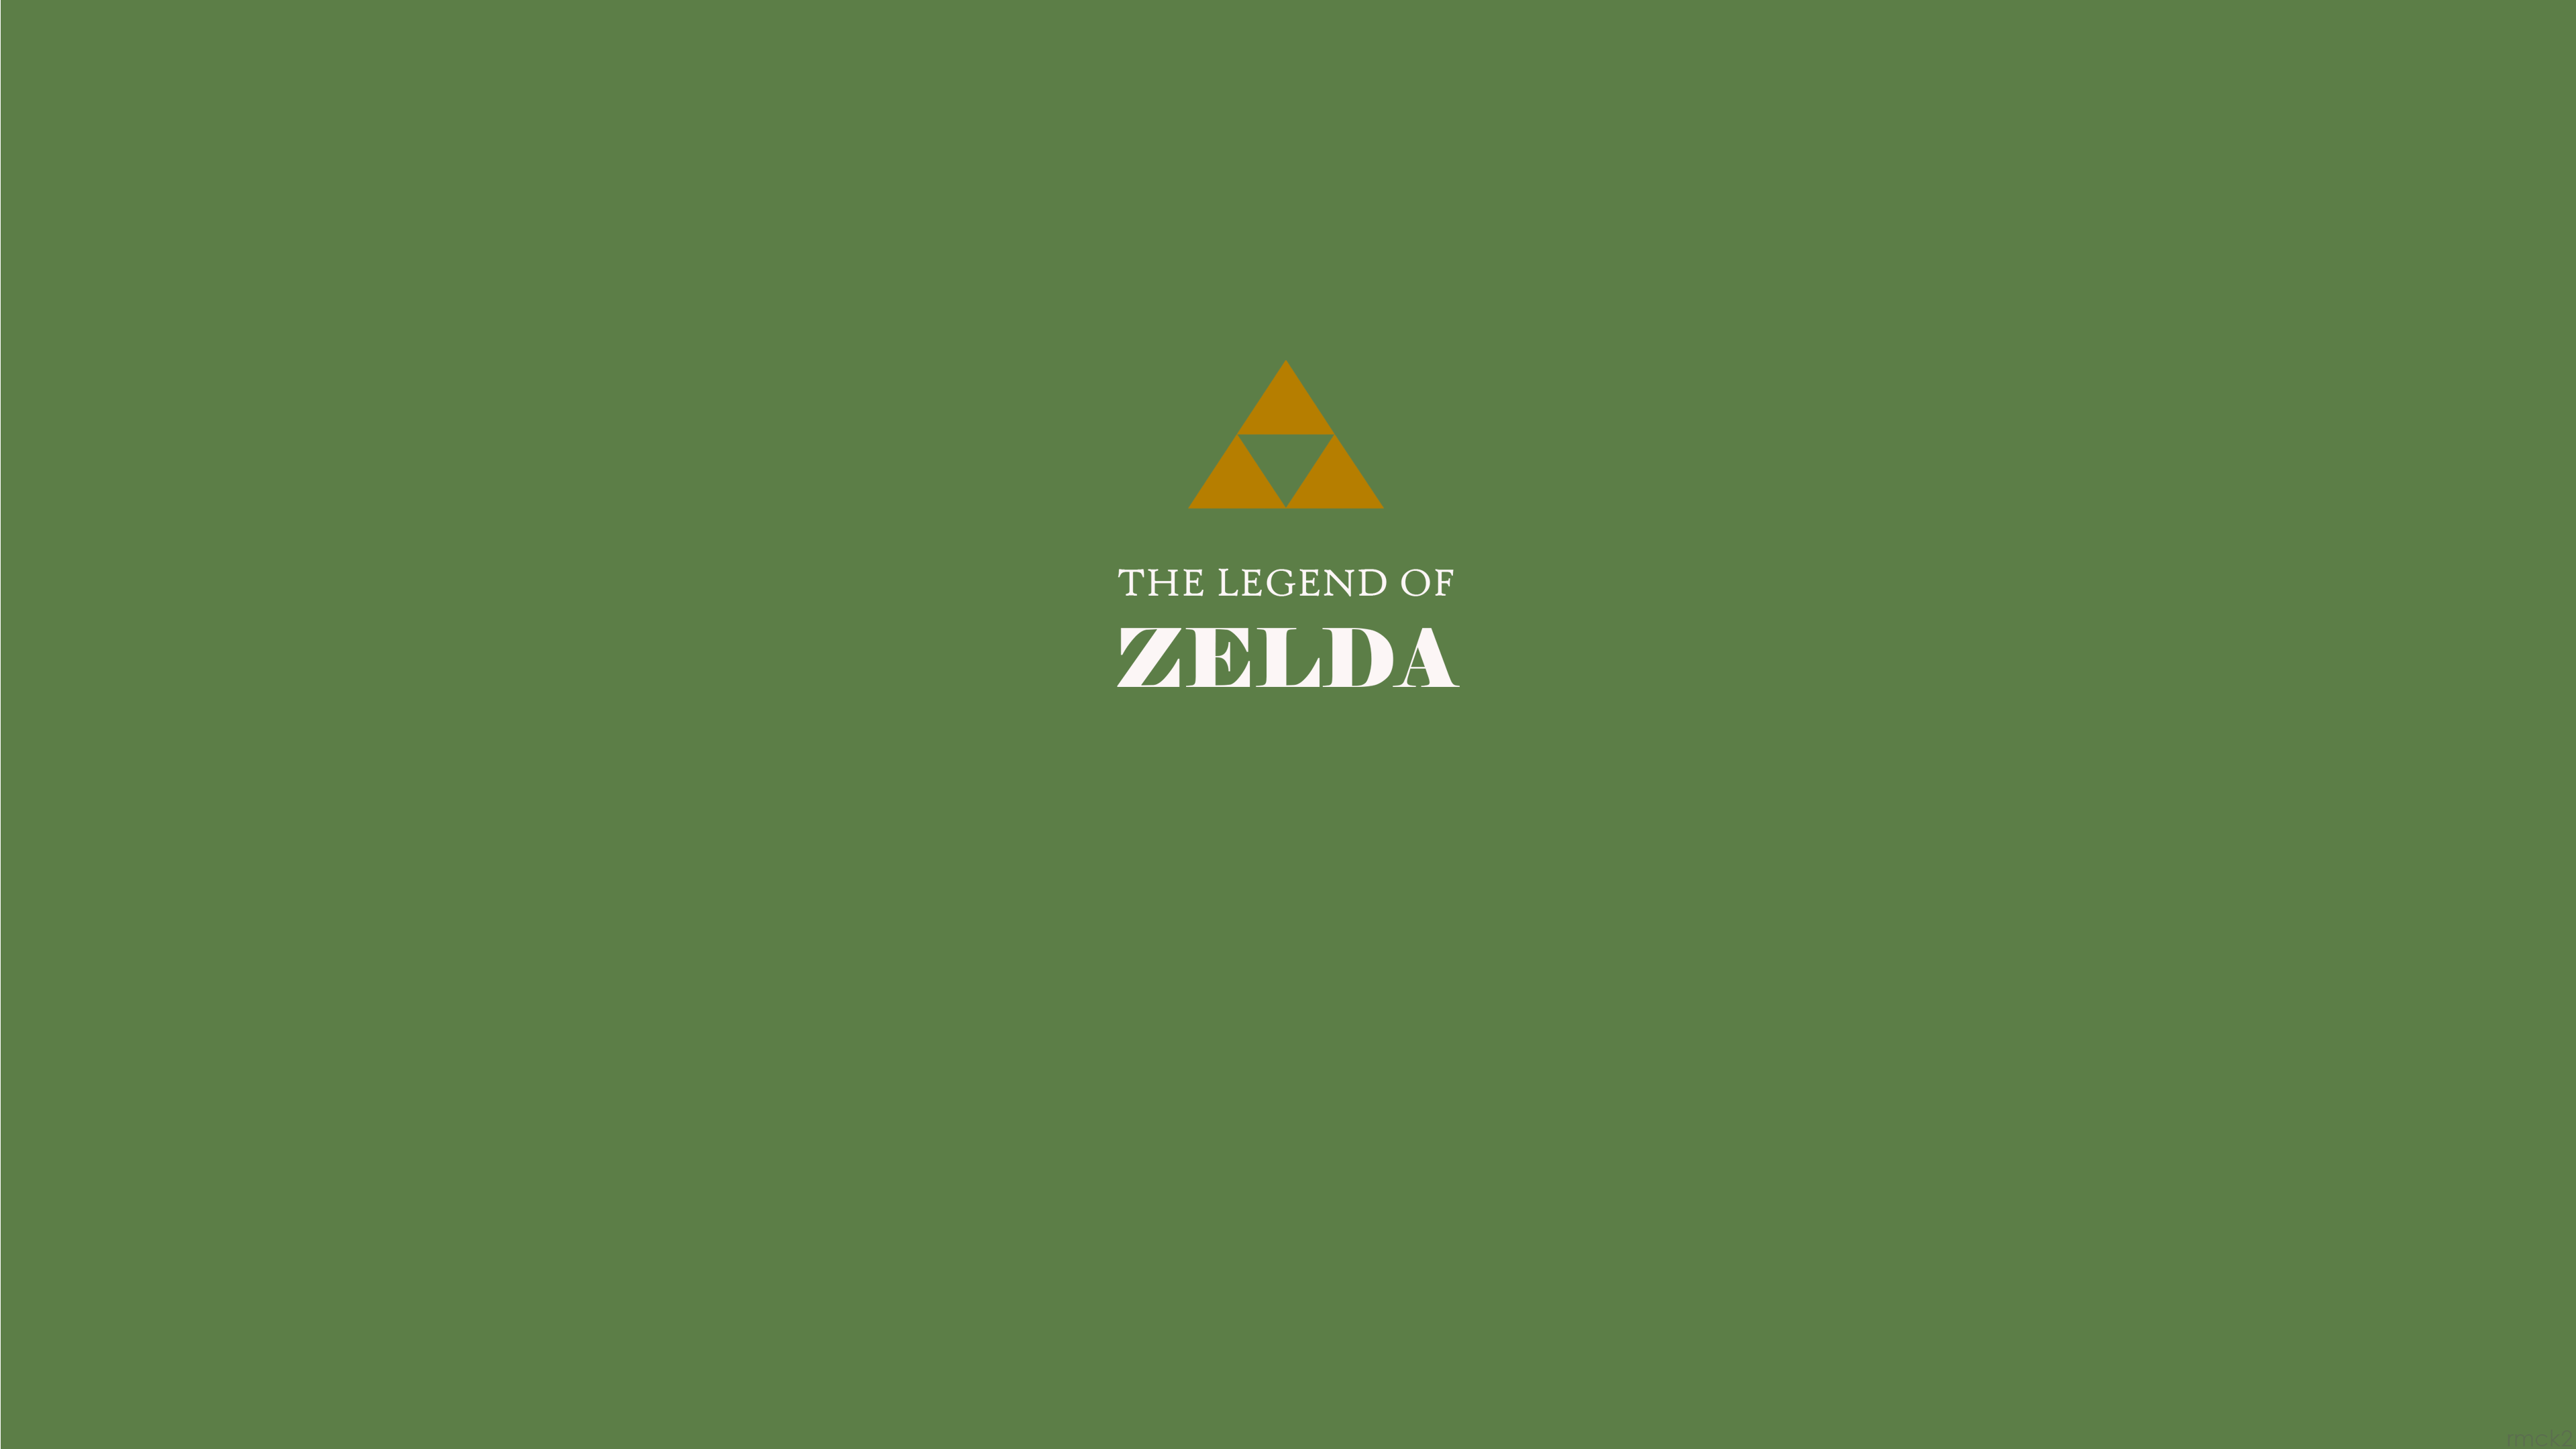 General 3840x2160 Zelda The Legend of Zelda Triforce minimalism video games